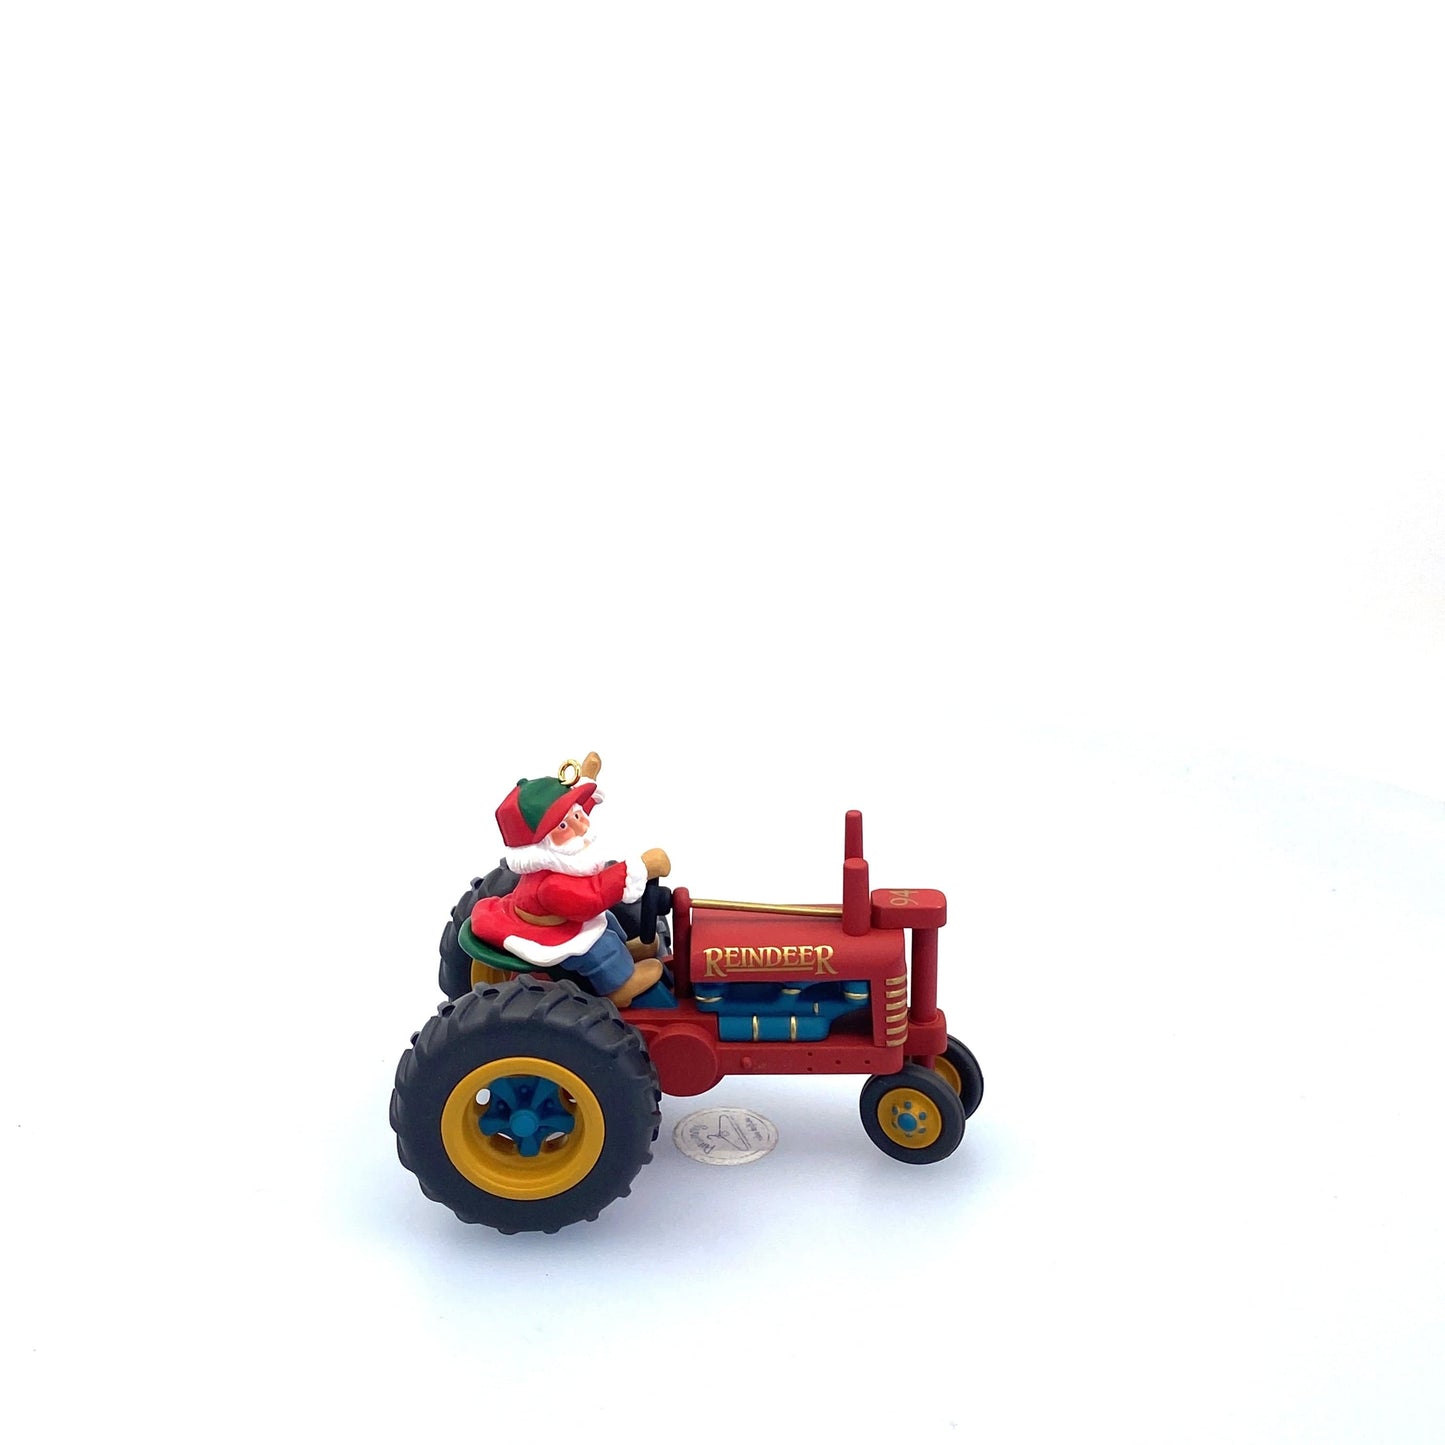 Hallmark Keepsake Christmas Tree Ornament, 1994 - Makin’ Tractor Tracks